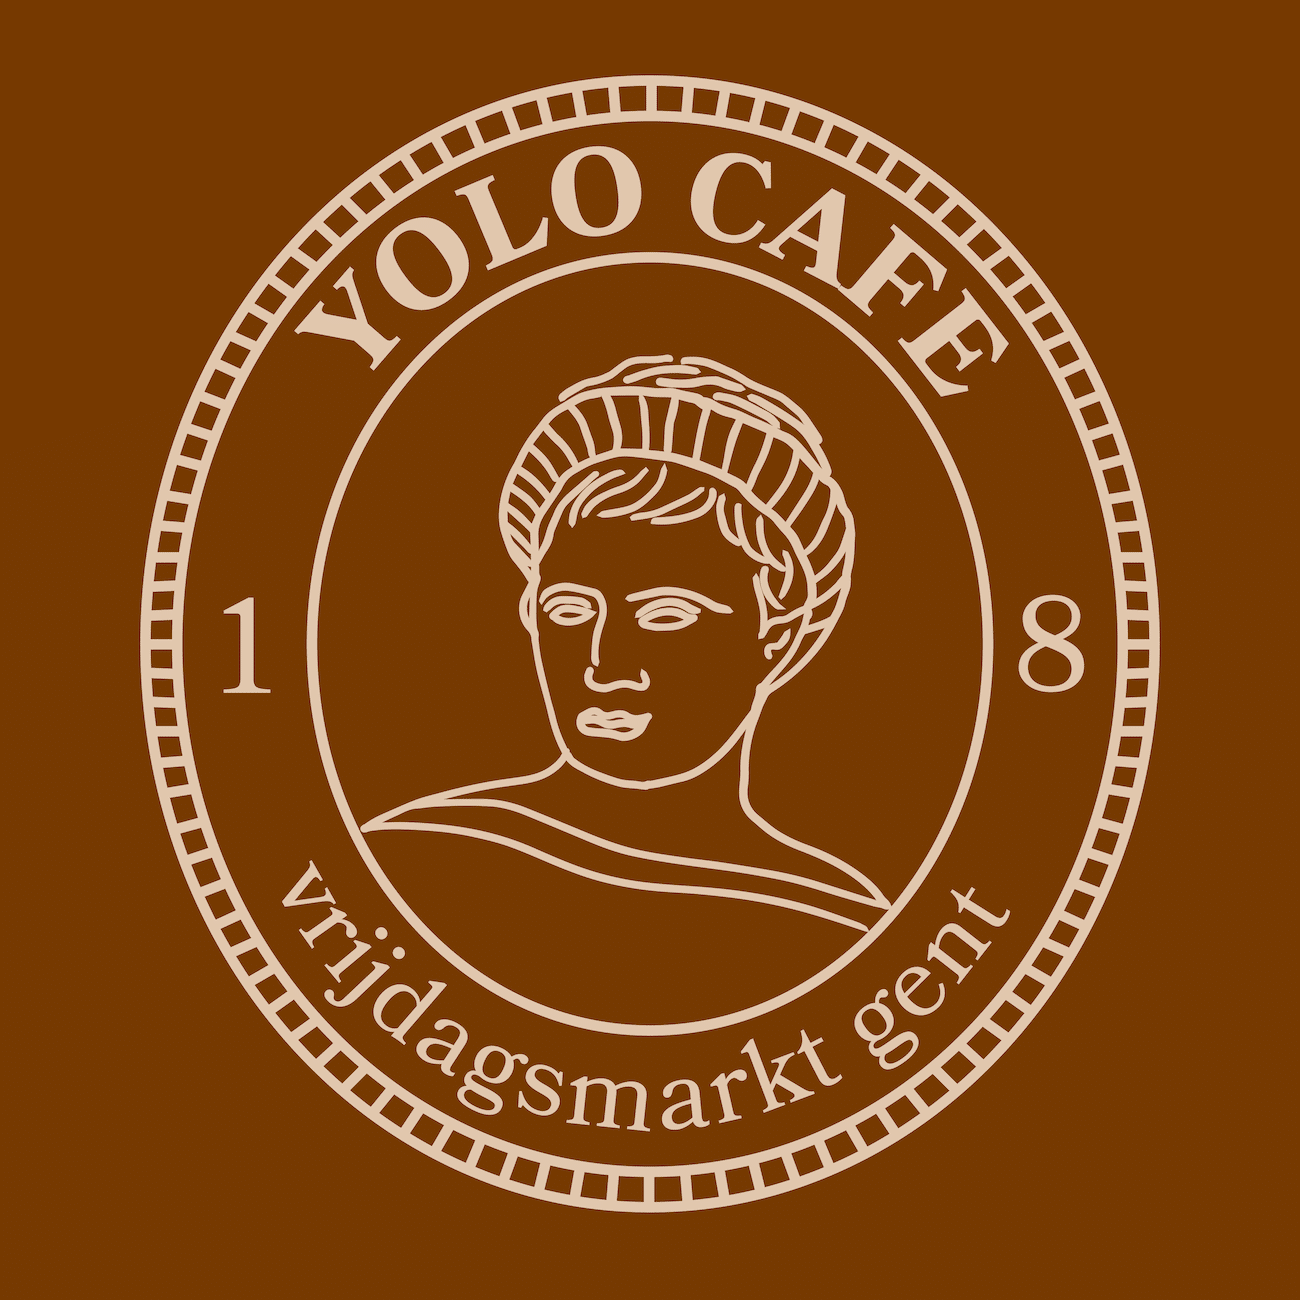 Yolo-Cafes Charakter-Design You im Münzstil, Sandfarbene Illustration auf Braun